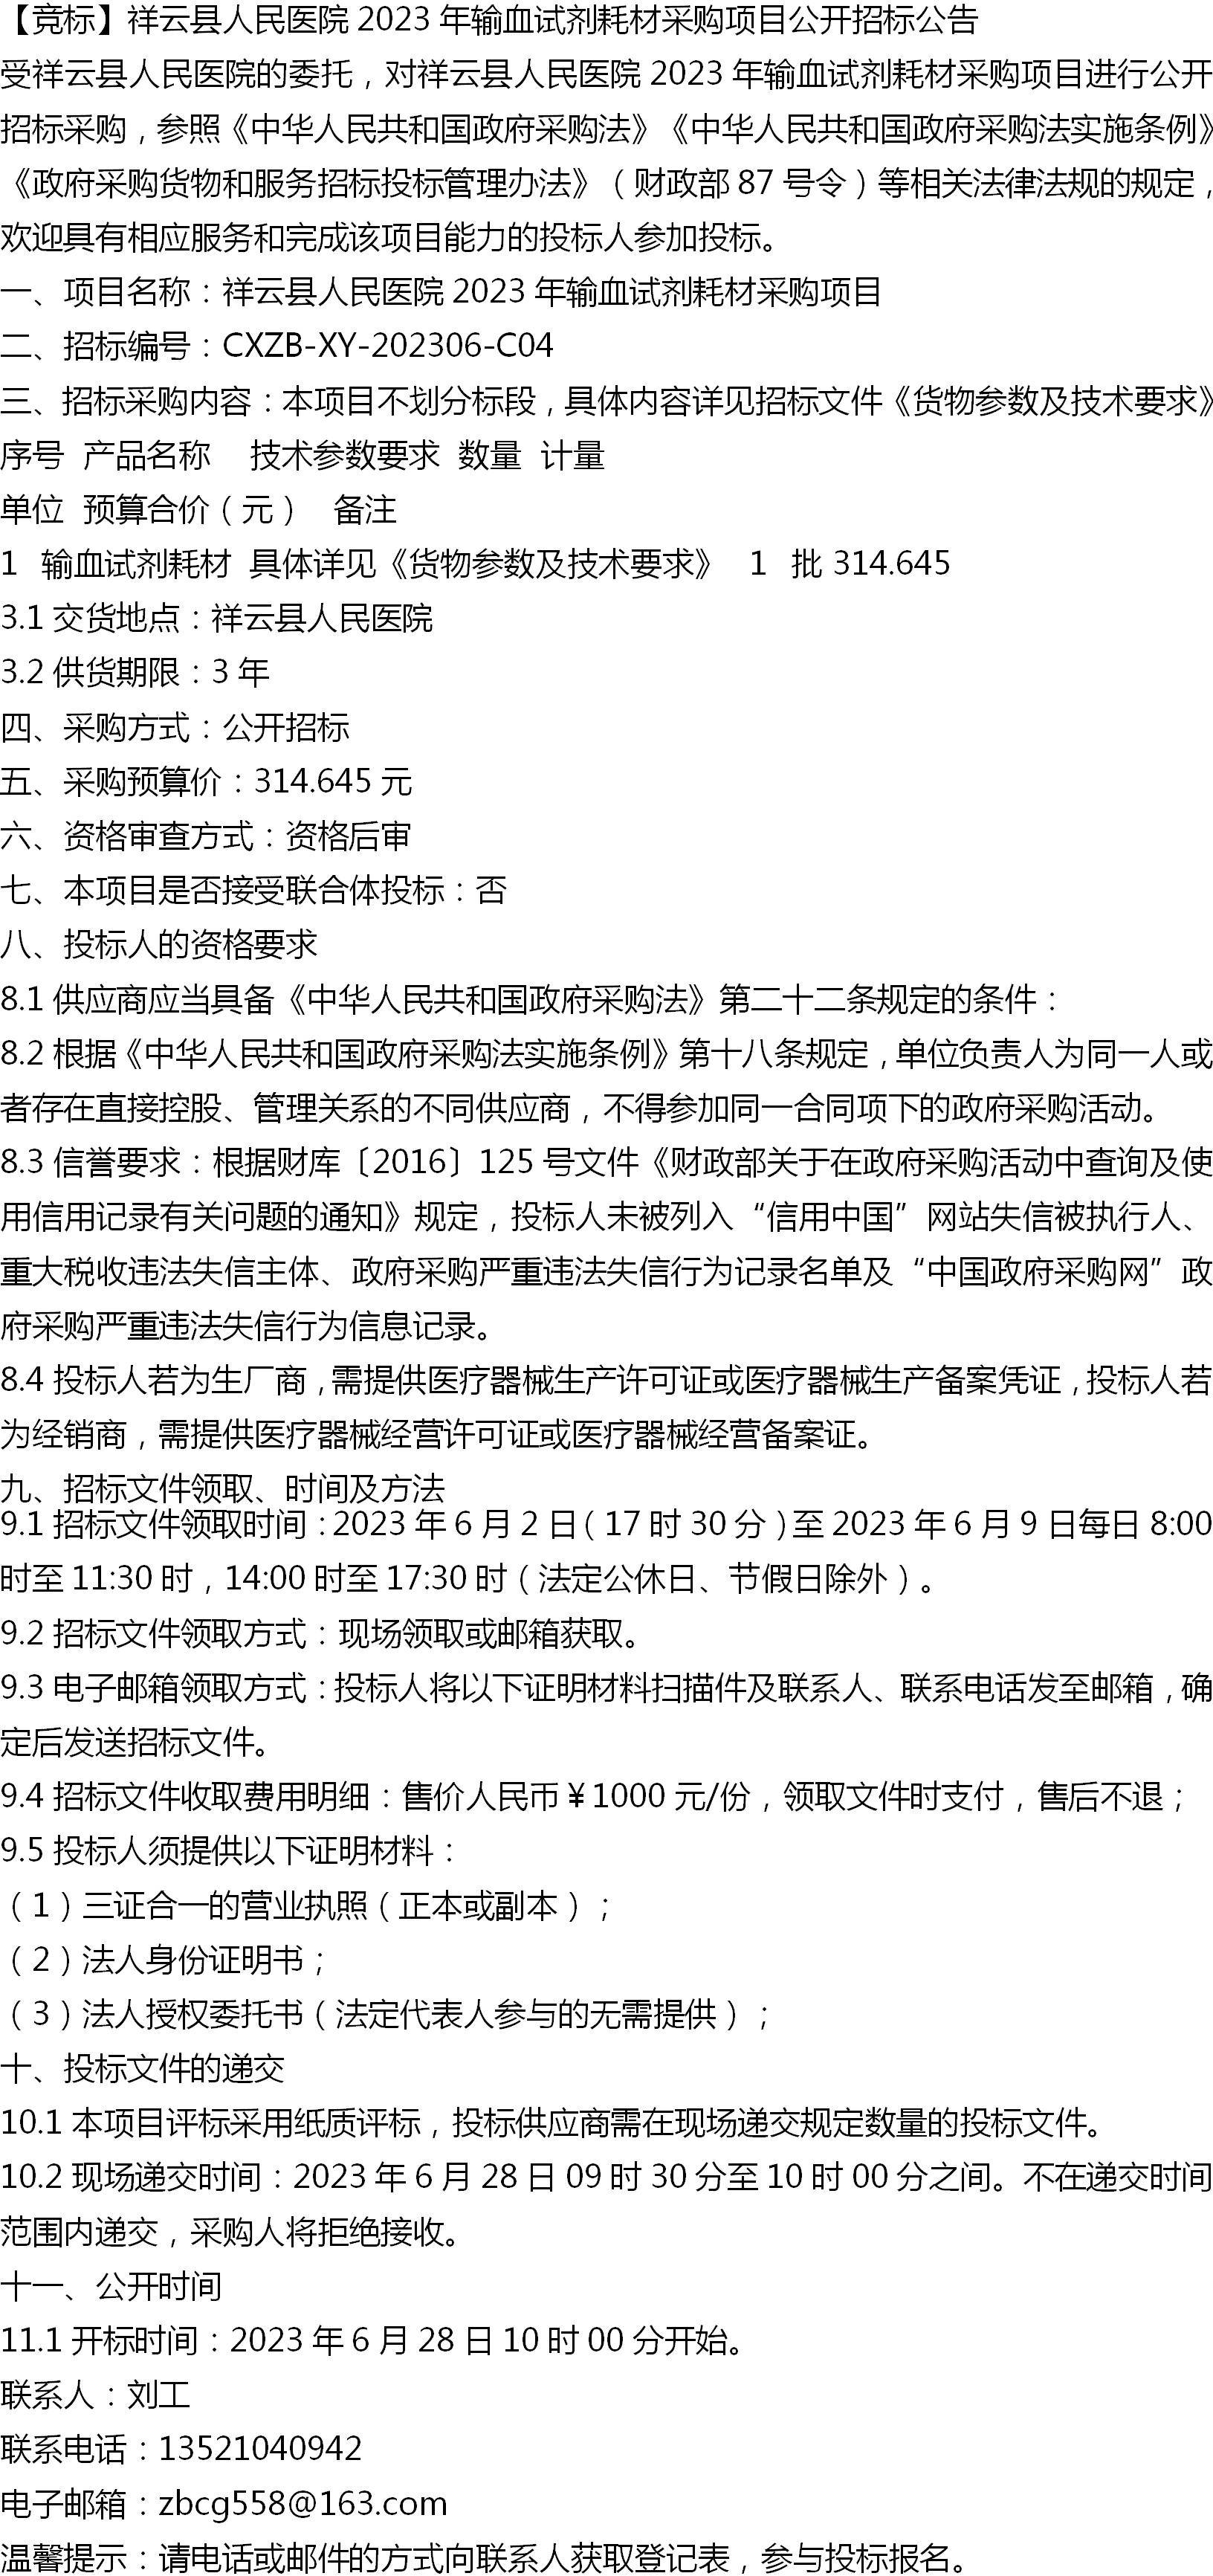 【竞标】祥云县人民医院2023年输血试剂耗材采购项目公开招标公告